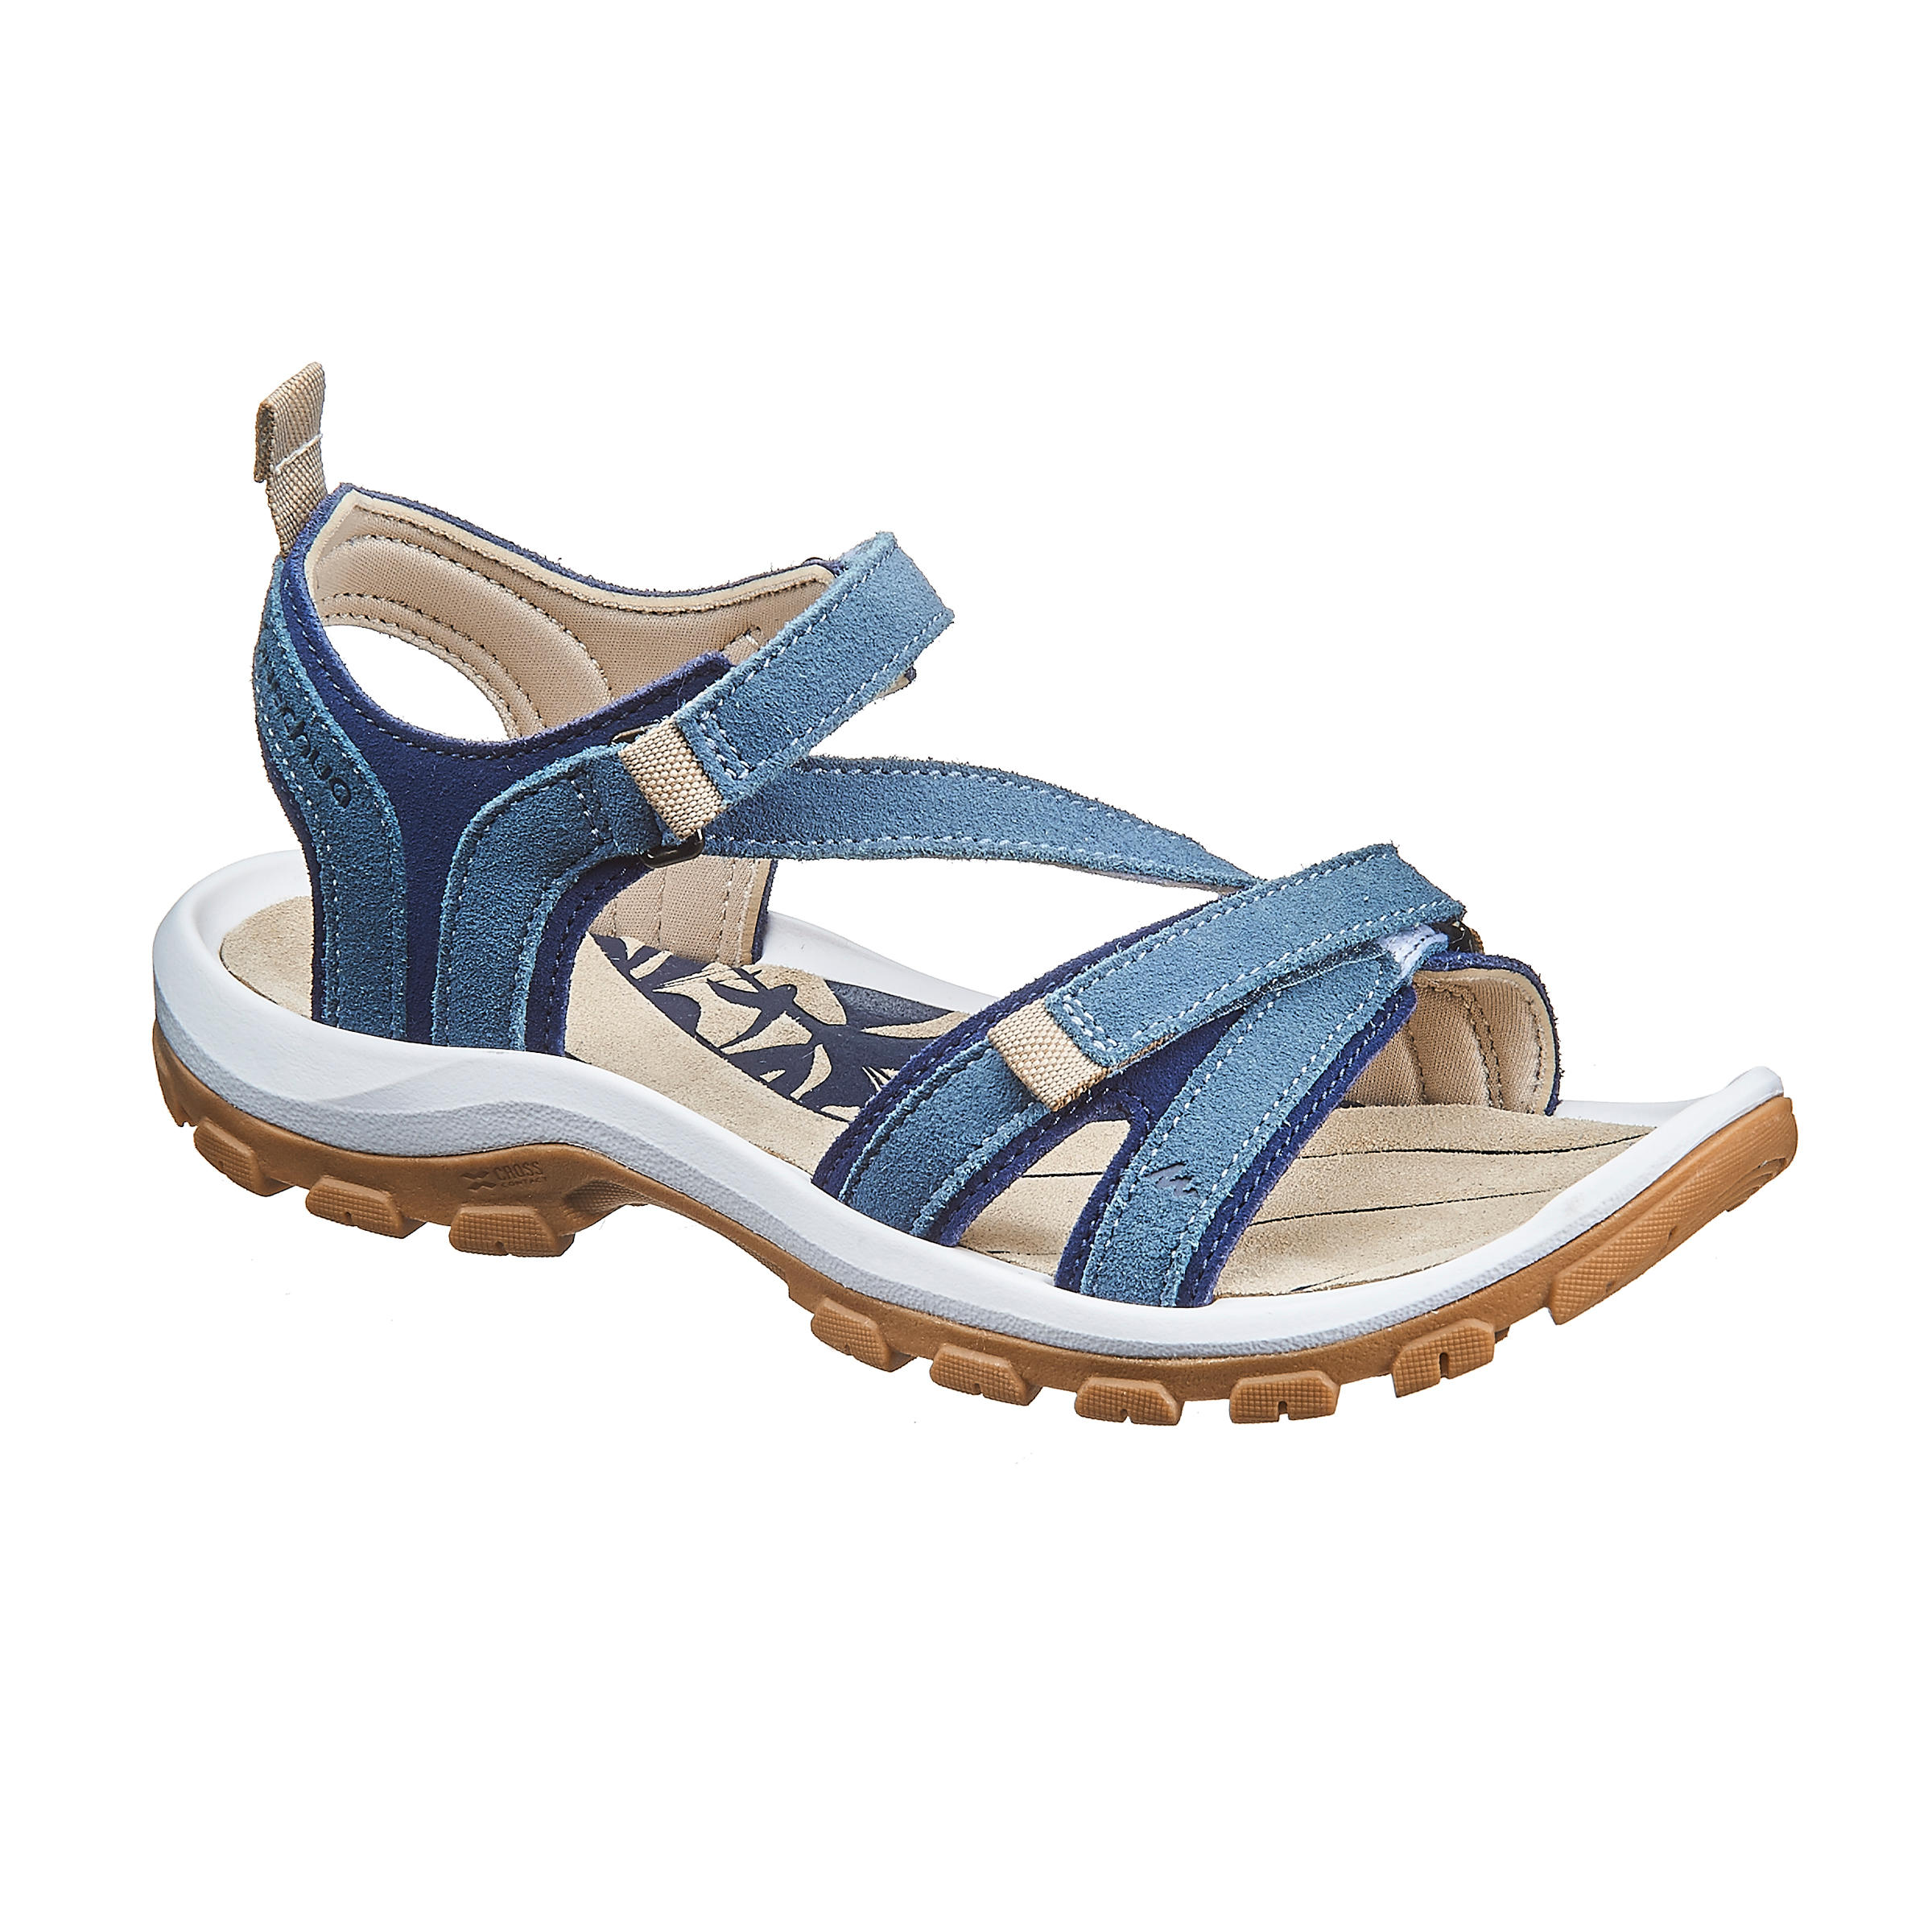 decathlon sandals for ladies